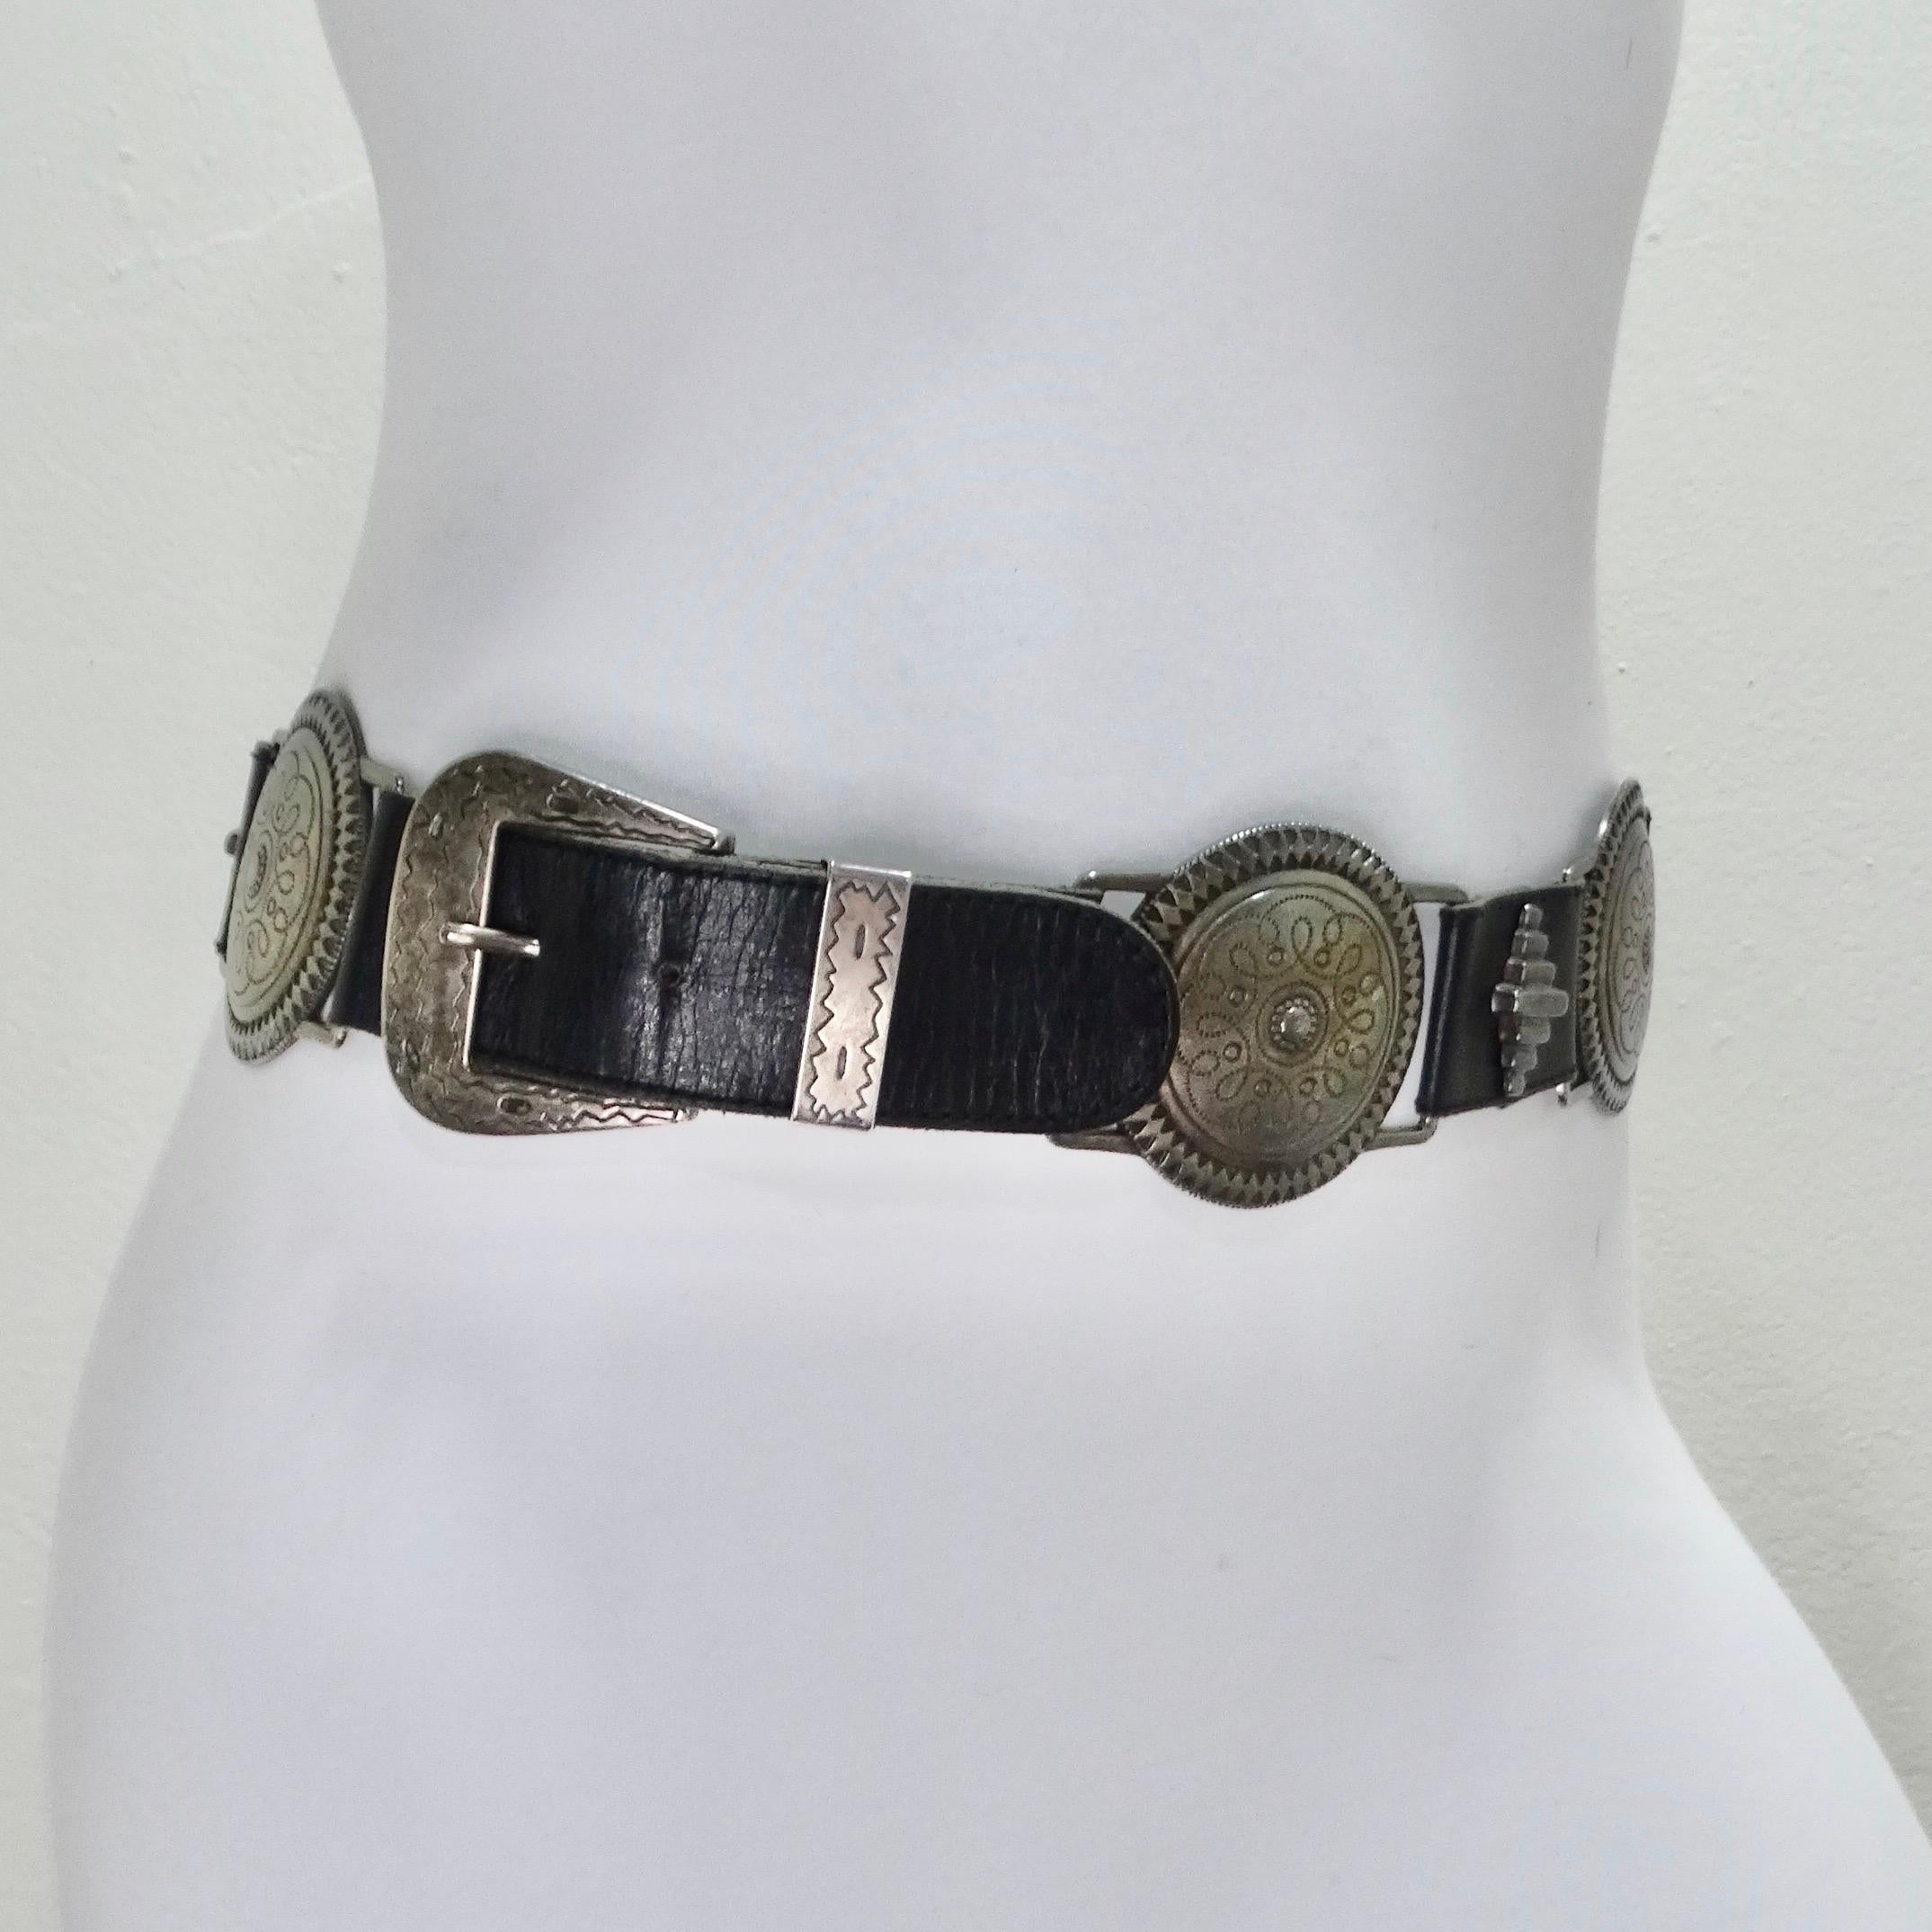 Voici cette ceinture intemporelle en cuir noir des années 1990, un accessoire indispensable qui allie sans effort allure vintage et flair contemporain. Ornée d'une série de boucles en métal argenté, chacune gravée de motifs géométriques, cette